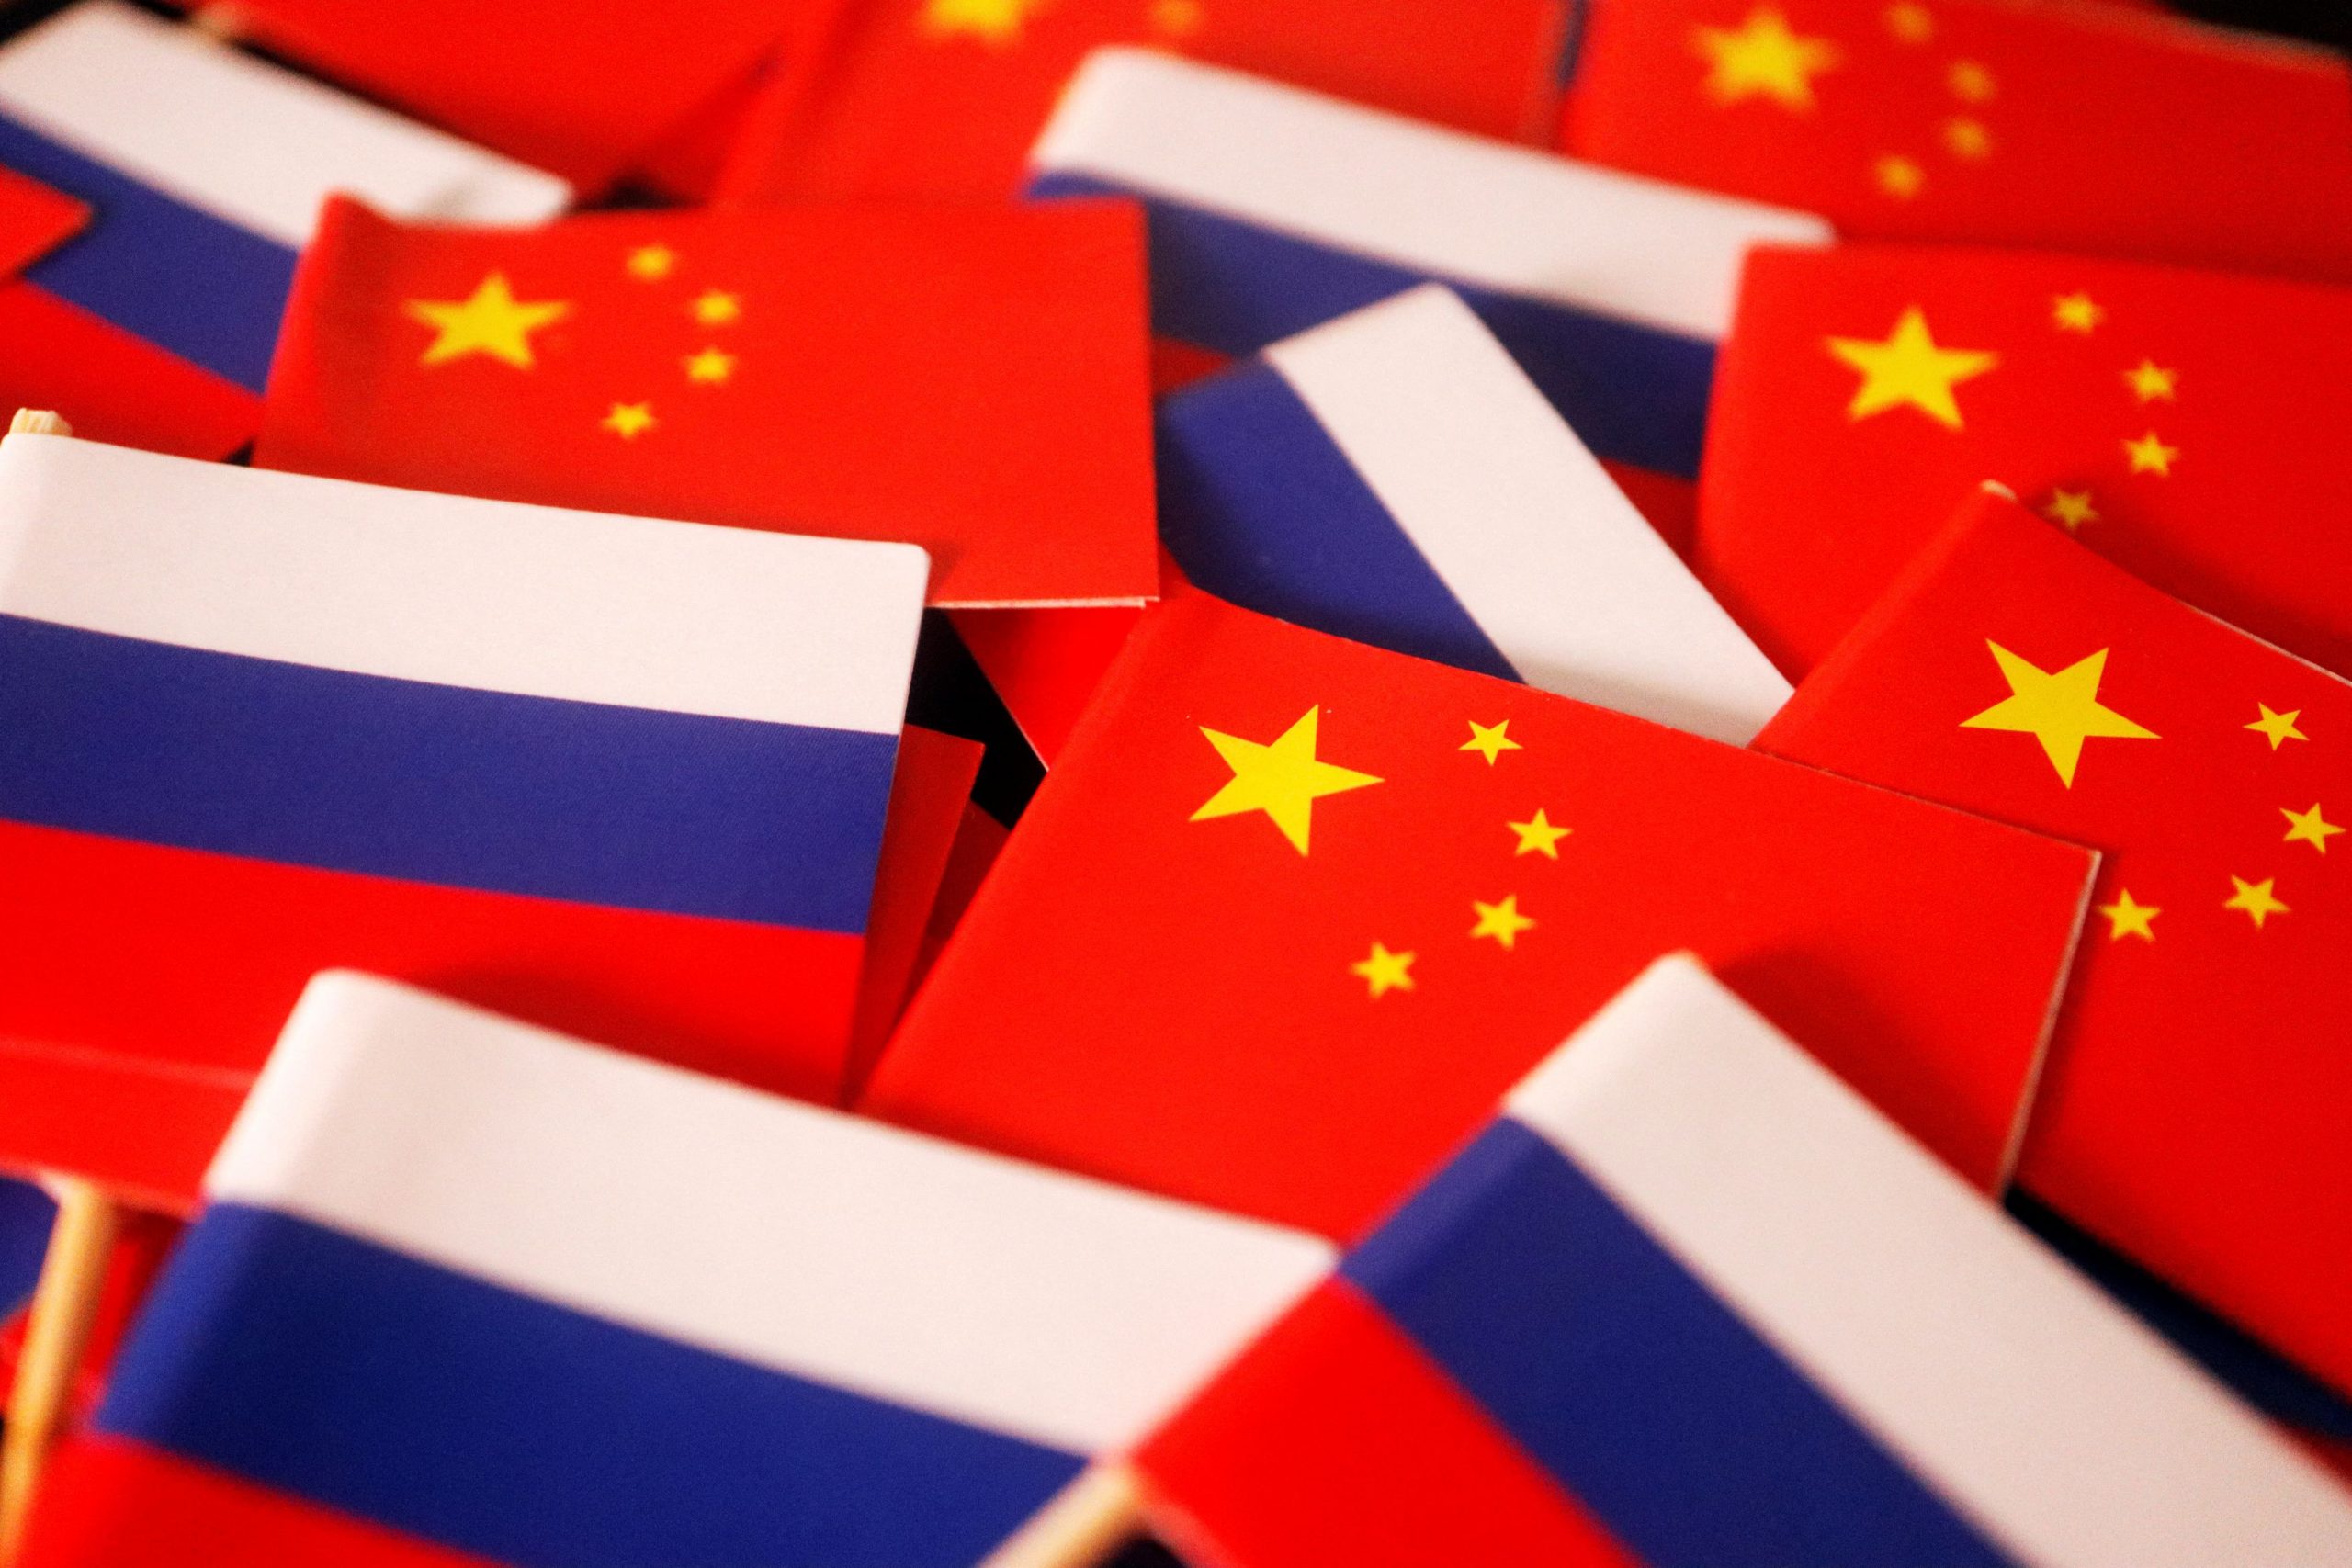 Ρωσία: Στα 200 δισ. δολάρια το εμπόριο με την Κίνα – Νέα δεδομένα φέρνουν οι κυρώσεις της Δύσης